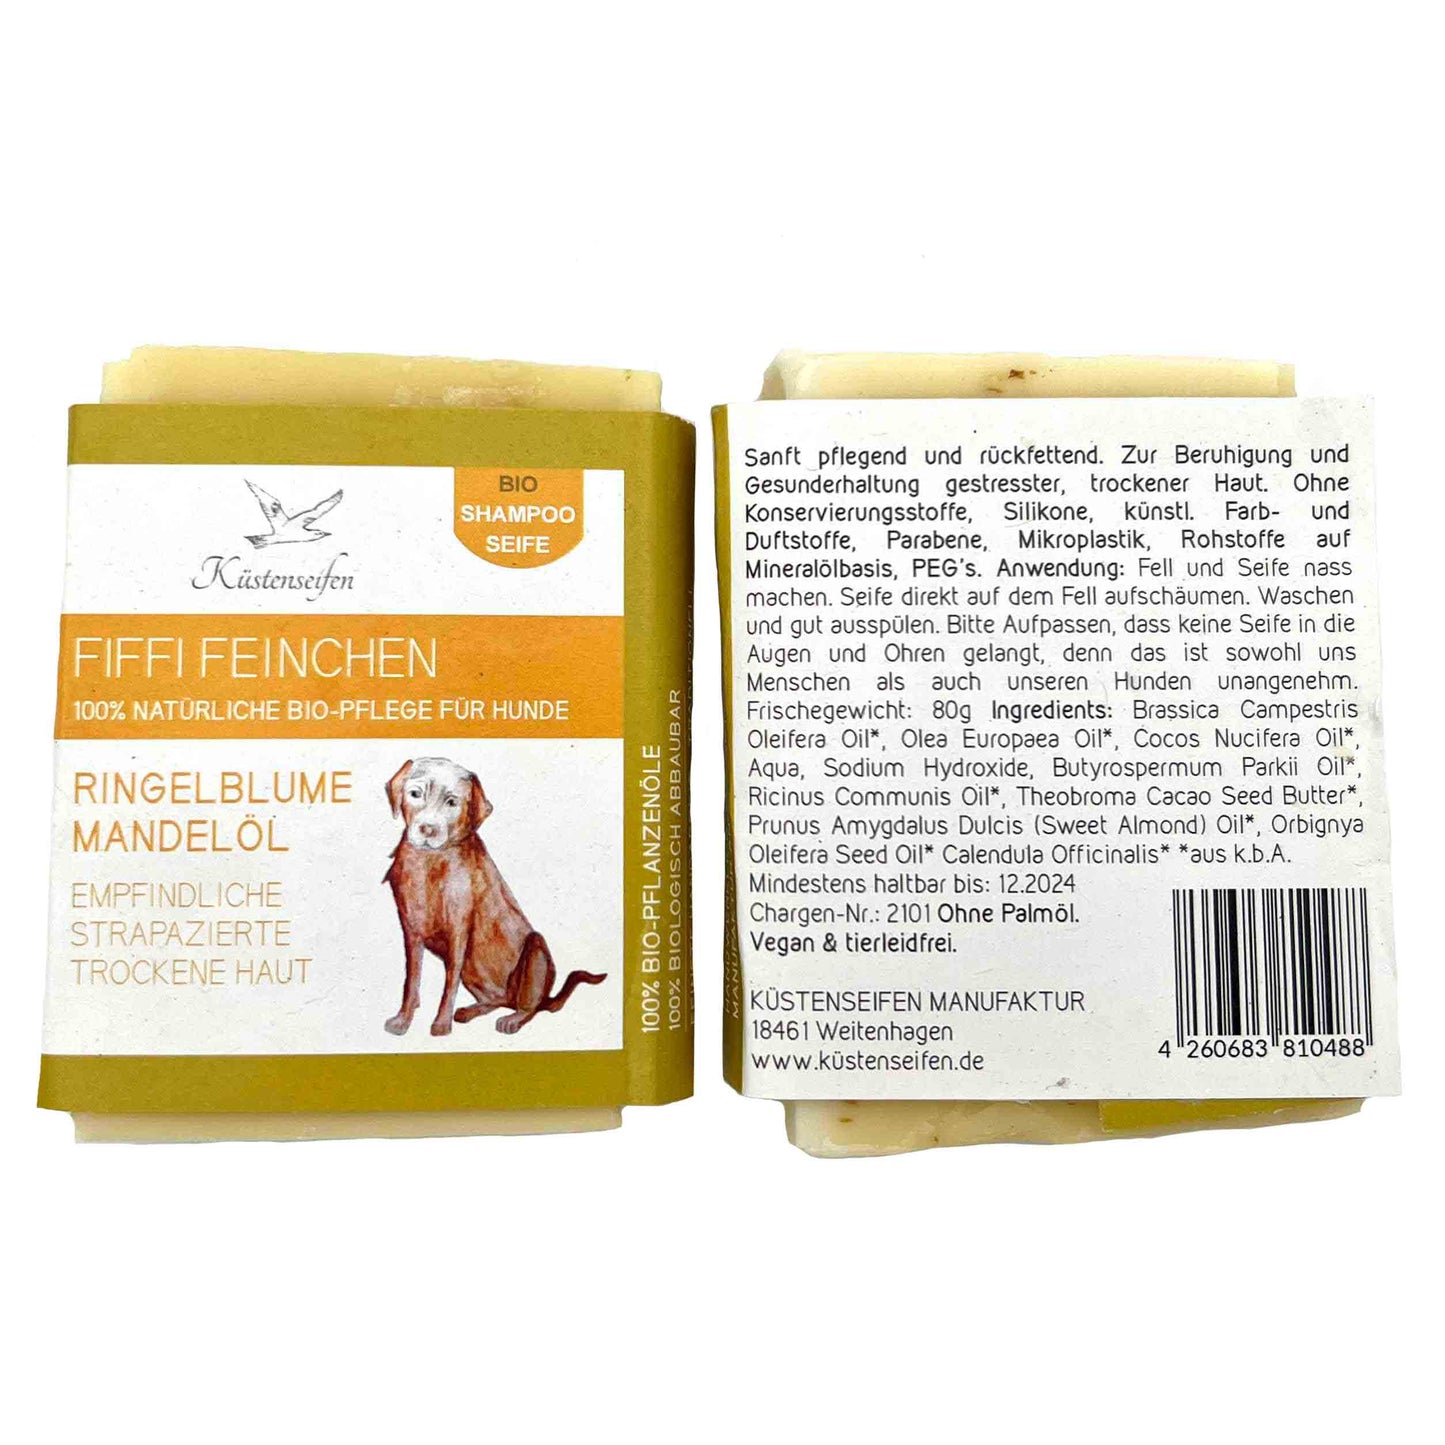 KÜSTENSEIFEN MANUFAKTUR handgesiedete Hundeseife für empfindliche und trockene Haut | 80g | natürliche Pflege | vegan